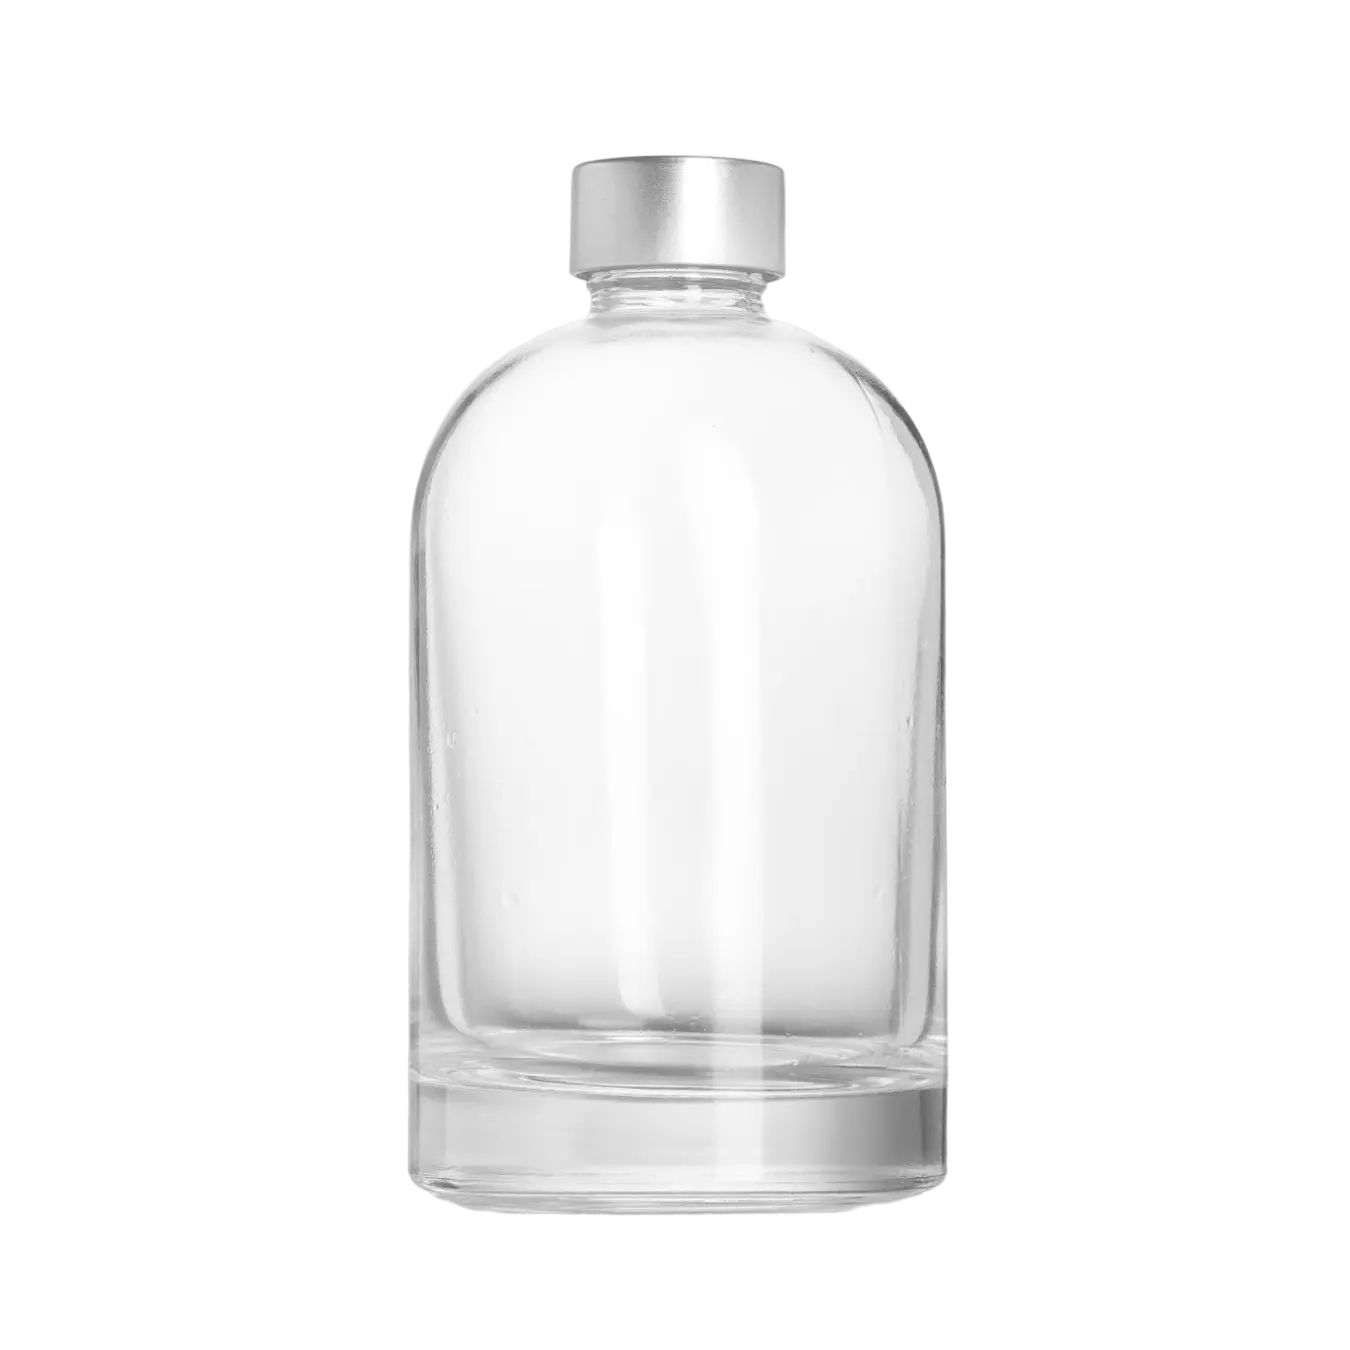 Garrafas de vidro fundo grosso 360ml, fabricante de china, garrafas de vidro para a marca, seu próprio vodka mojito, bebida, design personalizado, tequila